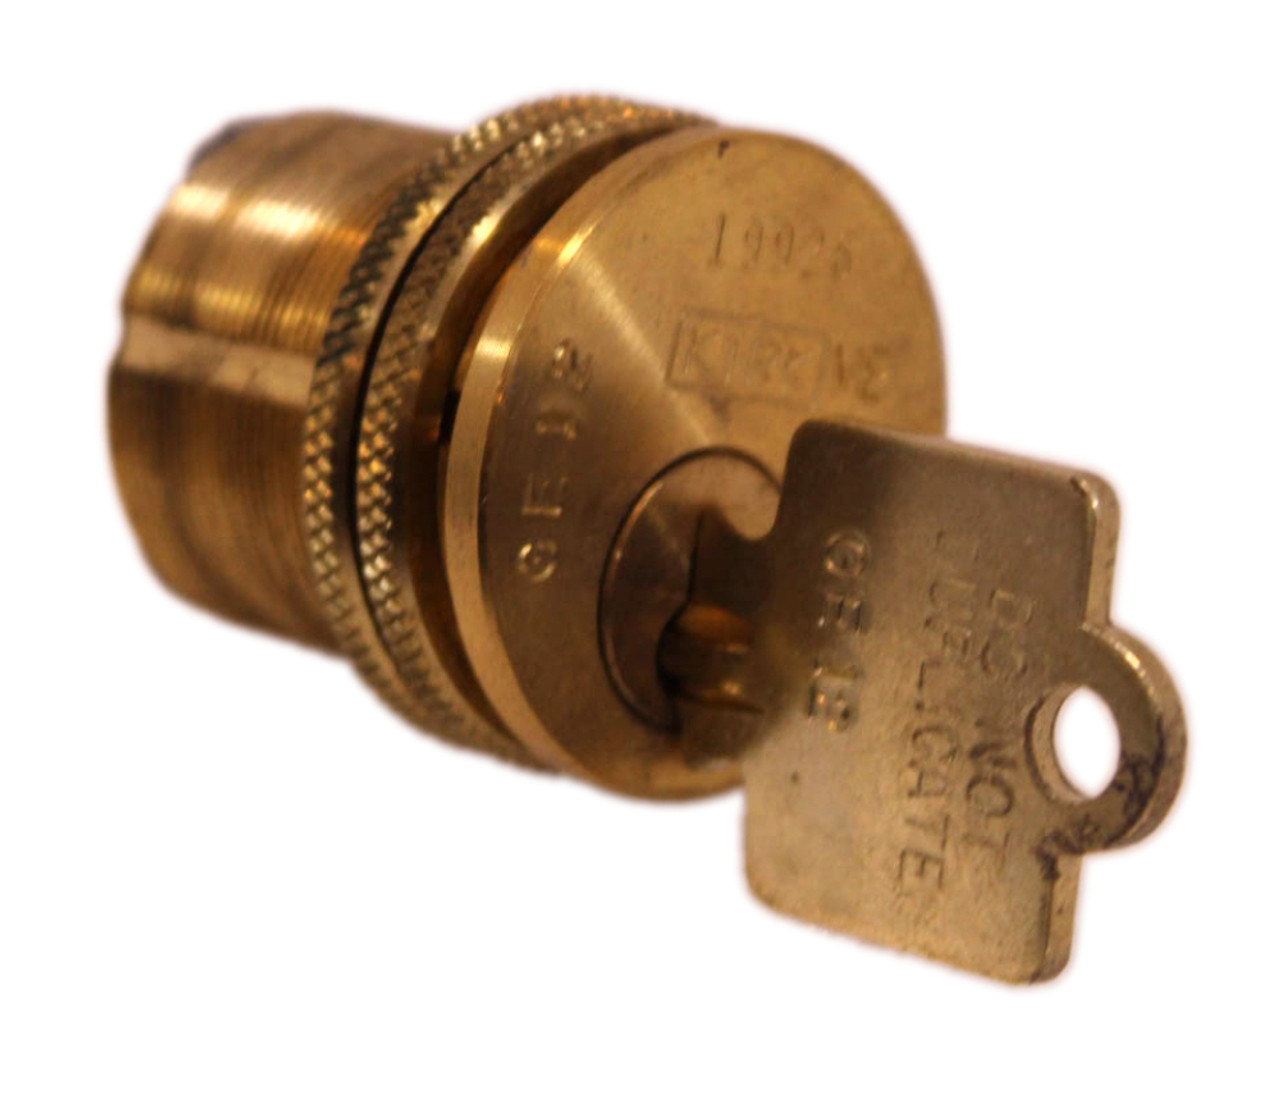 Kirk GF12 Breaker Lockout Key 19926